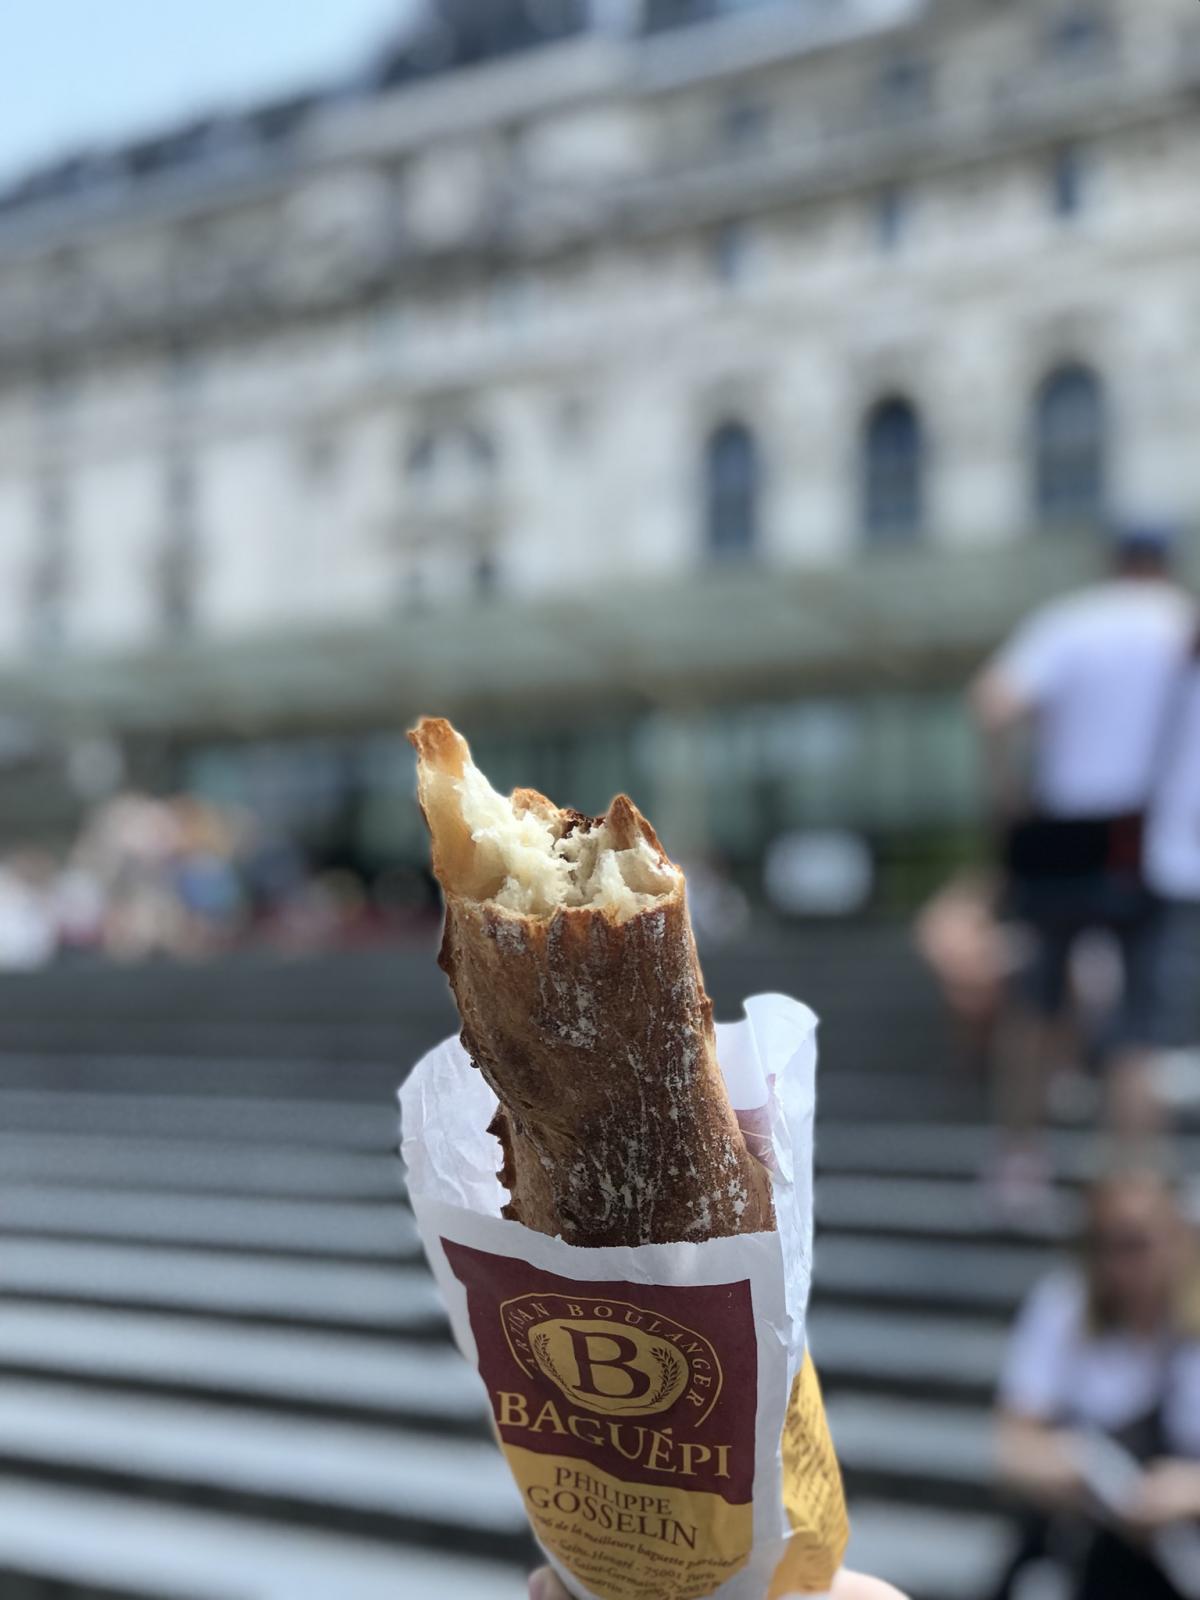 Gosselin baguette outside Musee d’Orsay